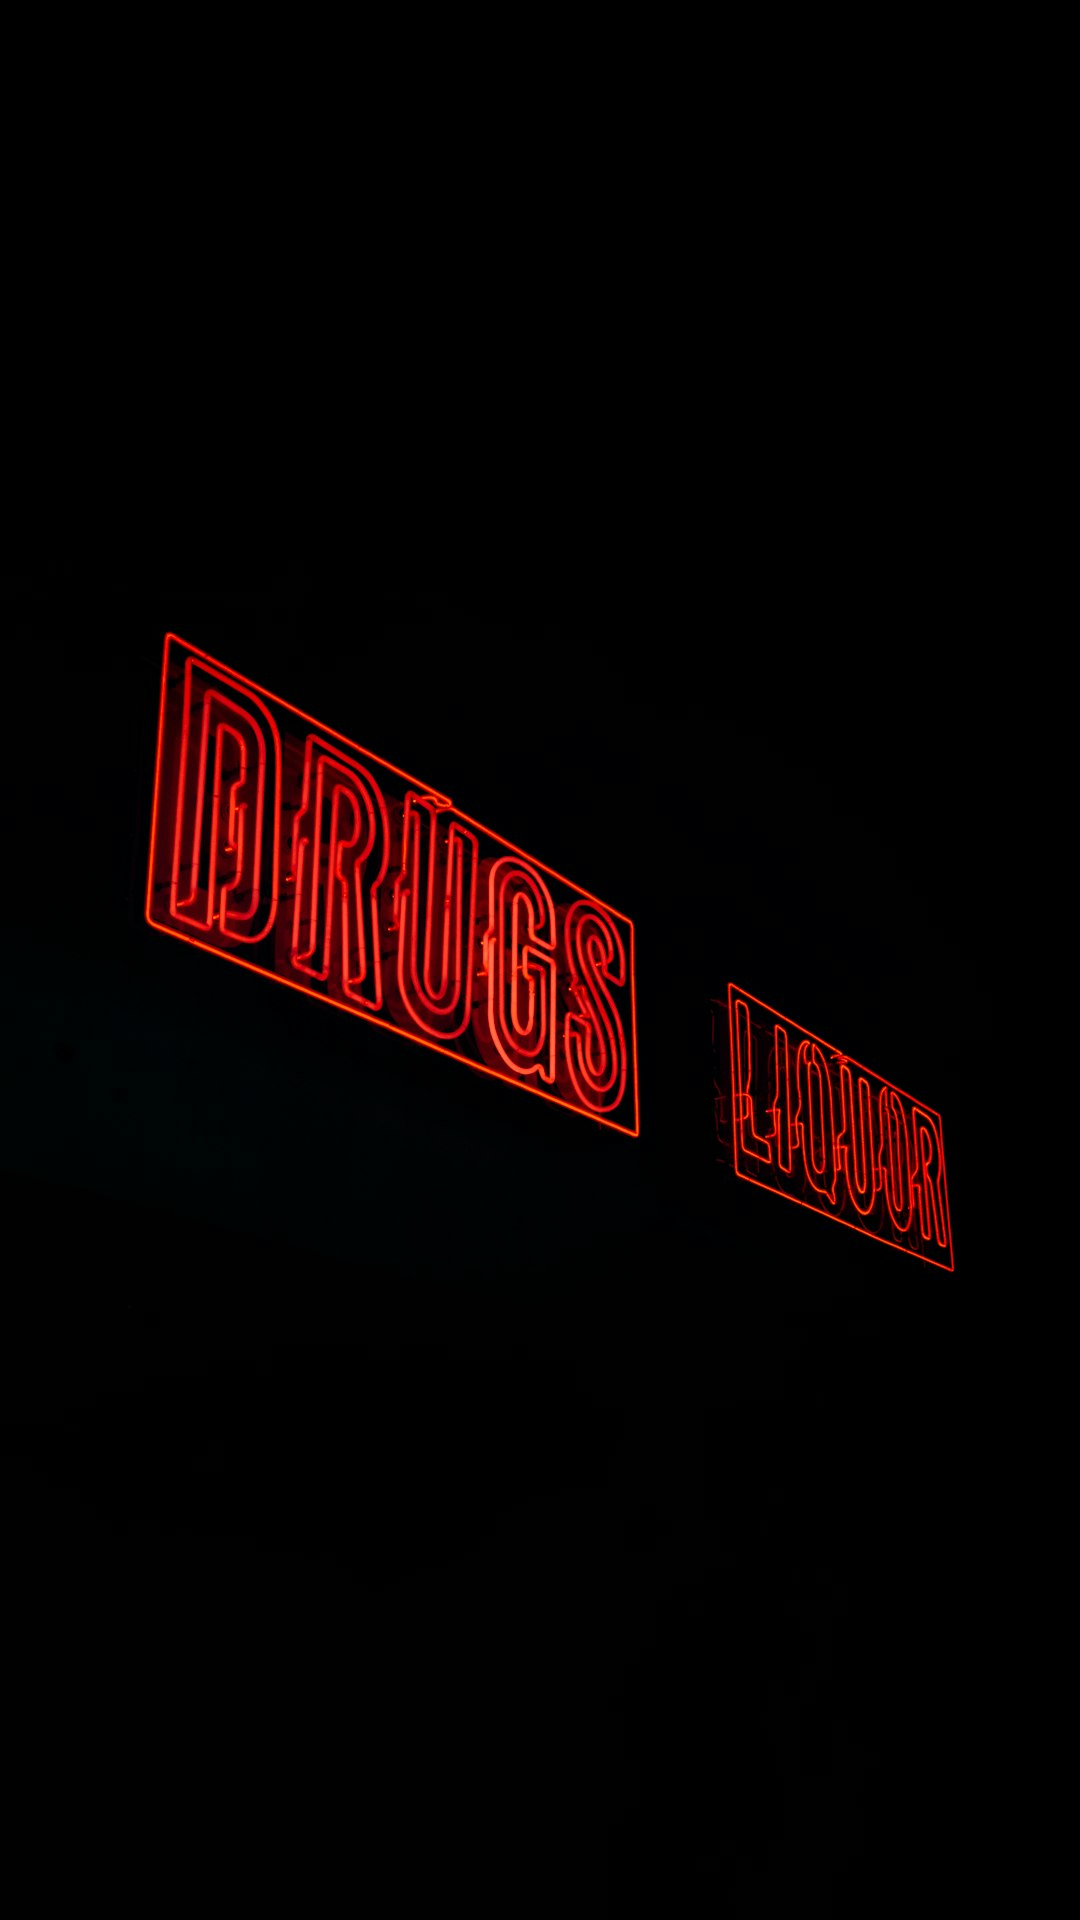 Drugs Liquor LED signage